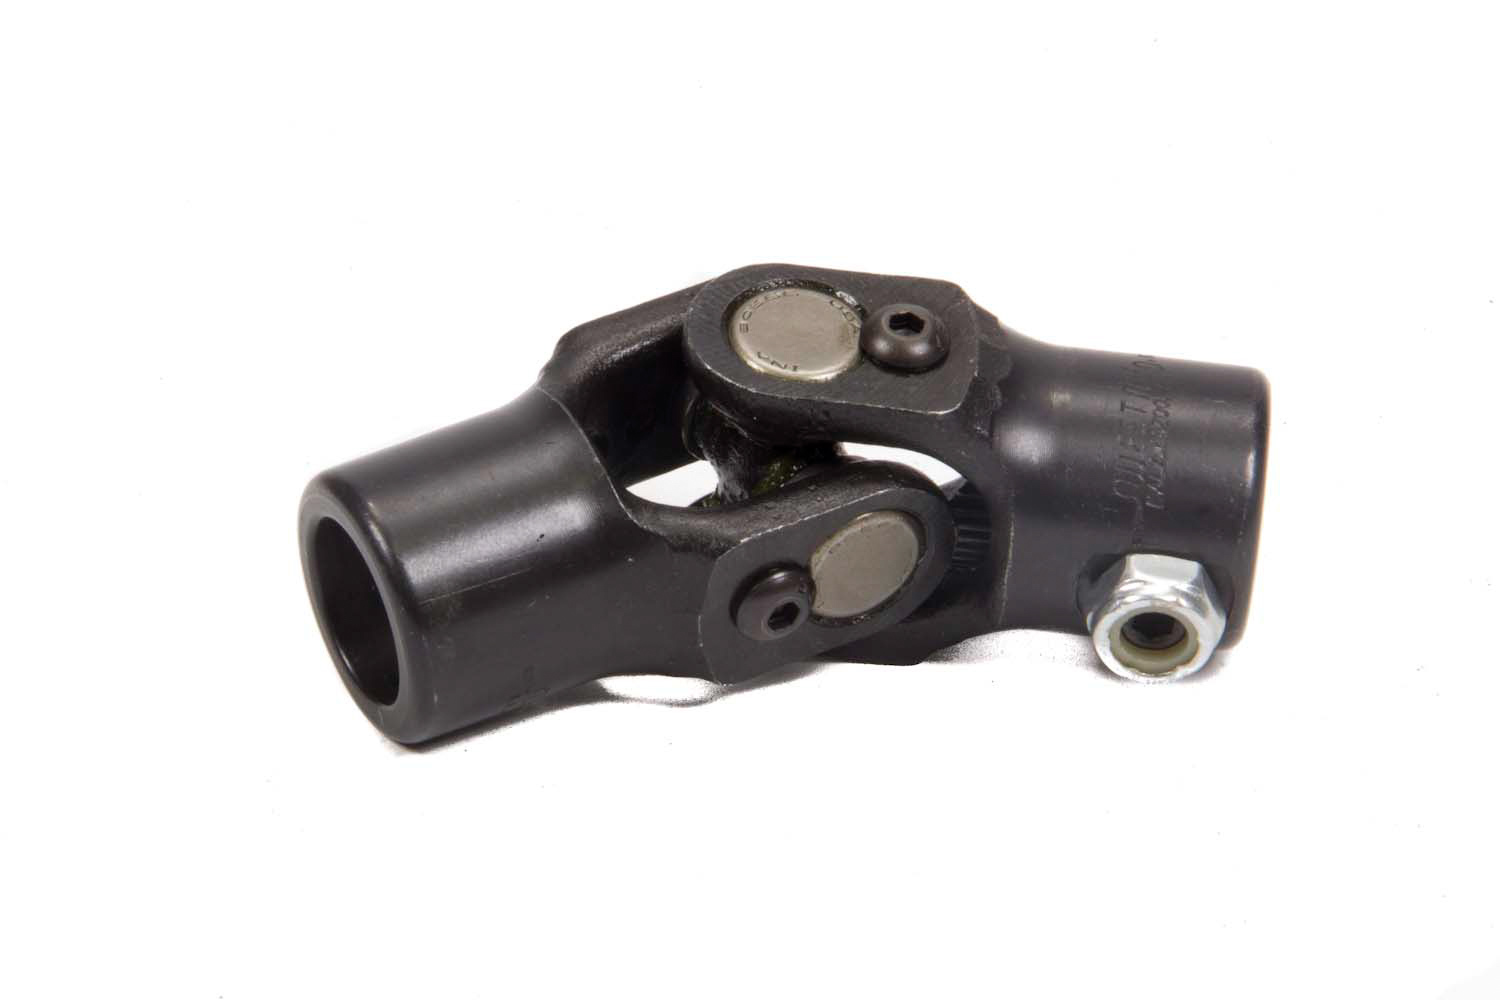 Steering Universal Joint - Single Joint - 3/4 in 36 Spline to 3/4 in 20 Spline - Steel - Black Paint - Each